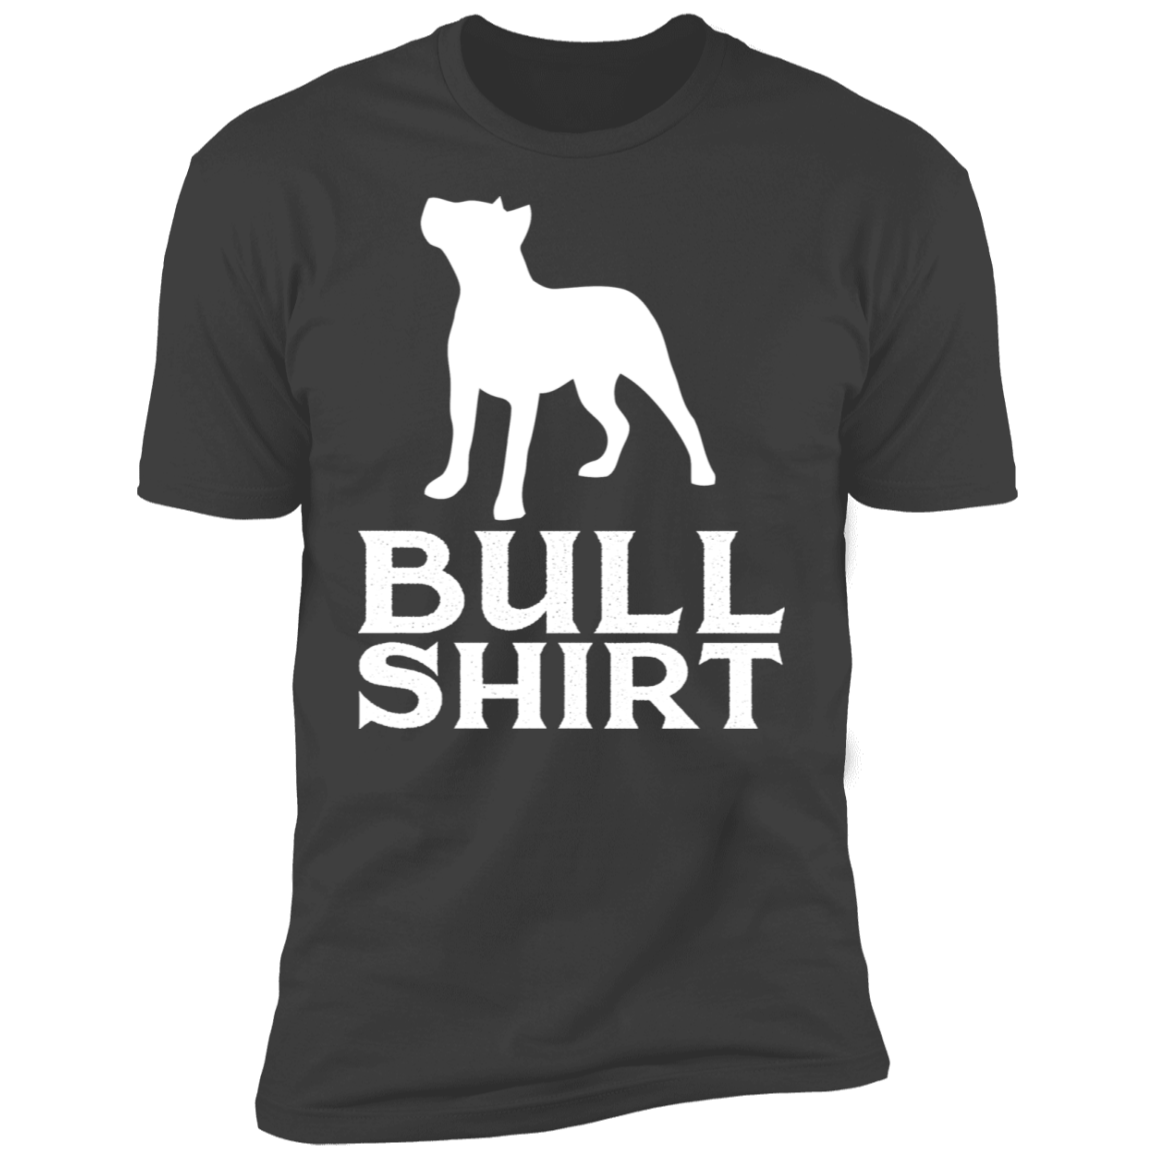 Bull Shirt Premium Short Sleeve T-Shirt